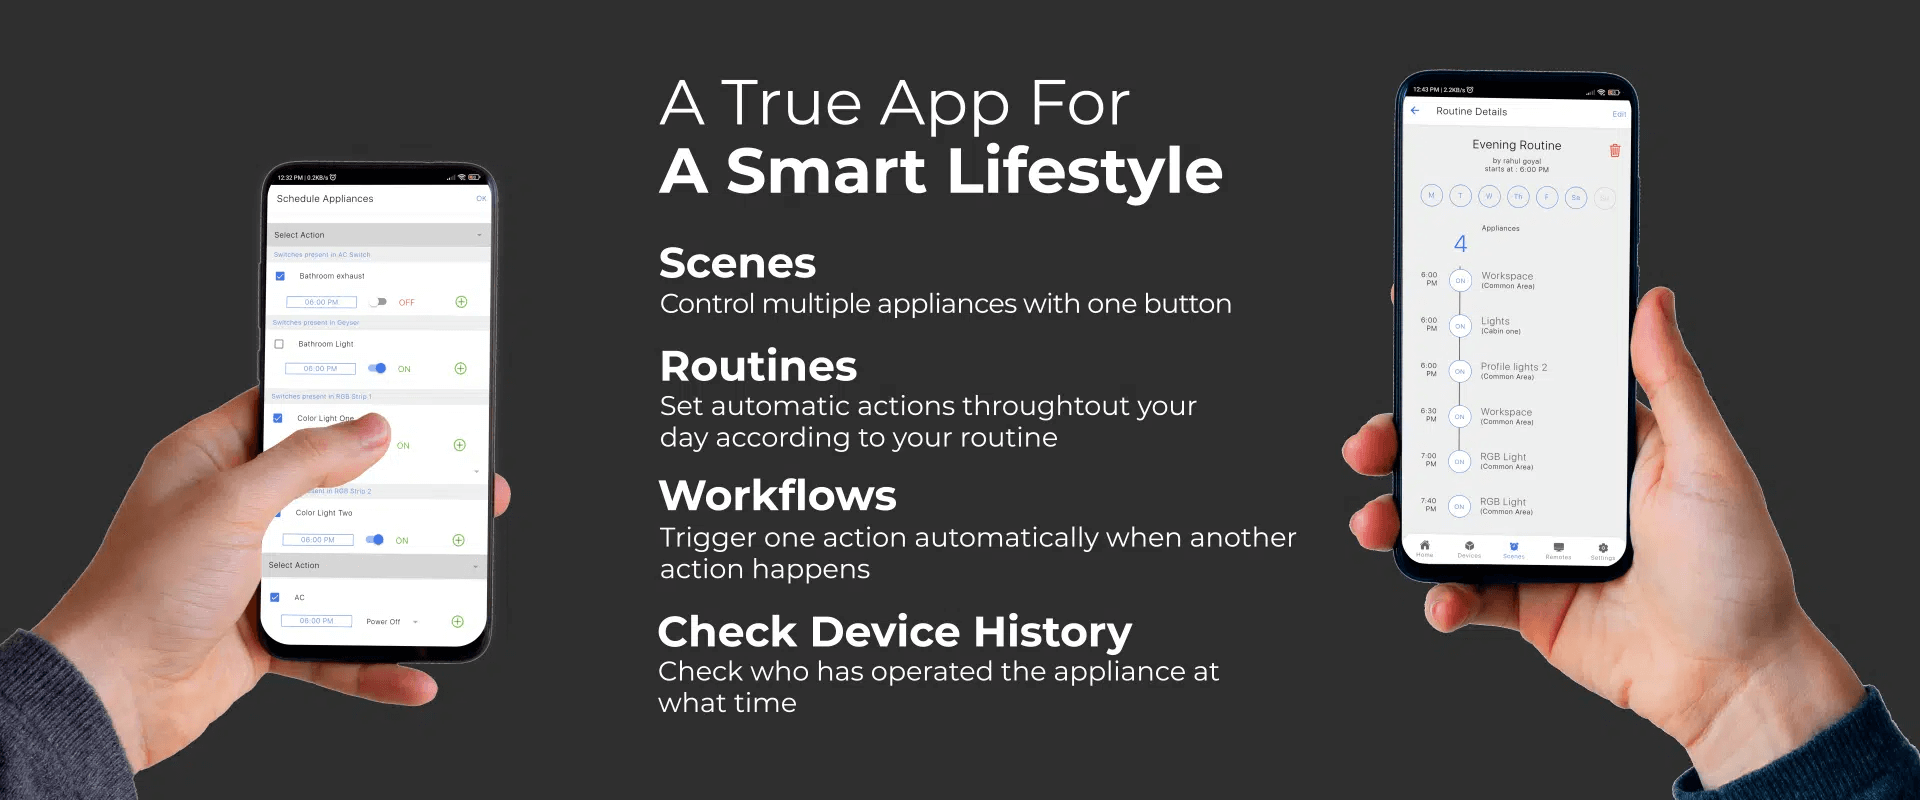 smart home app